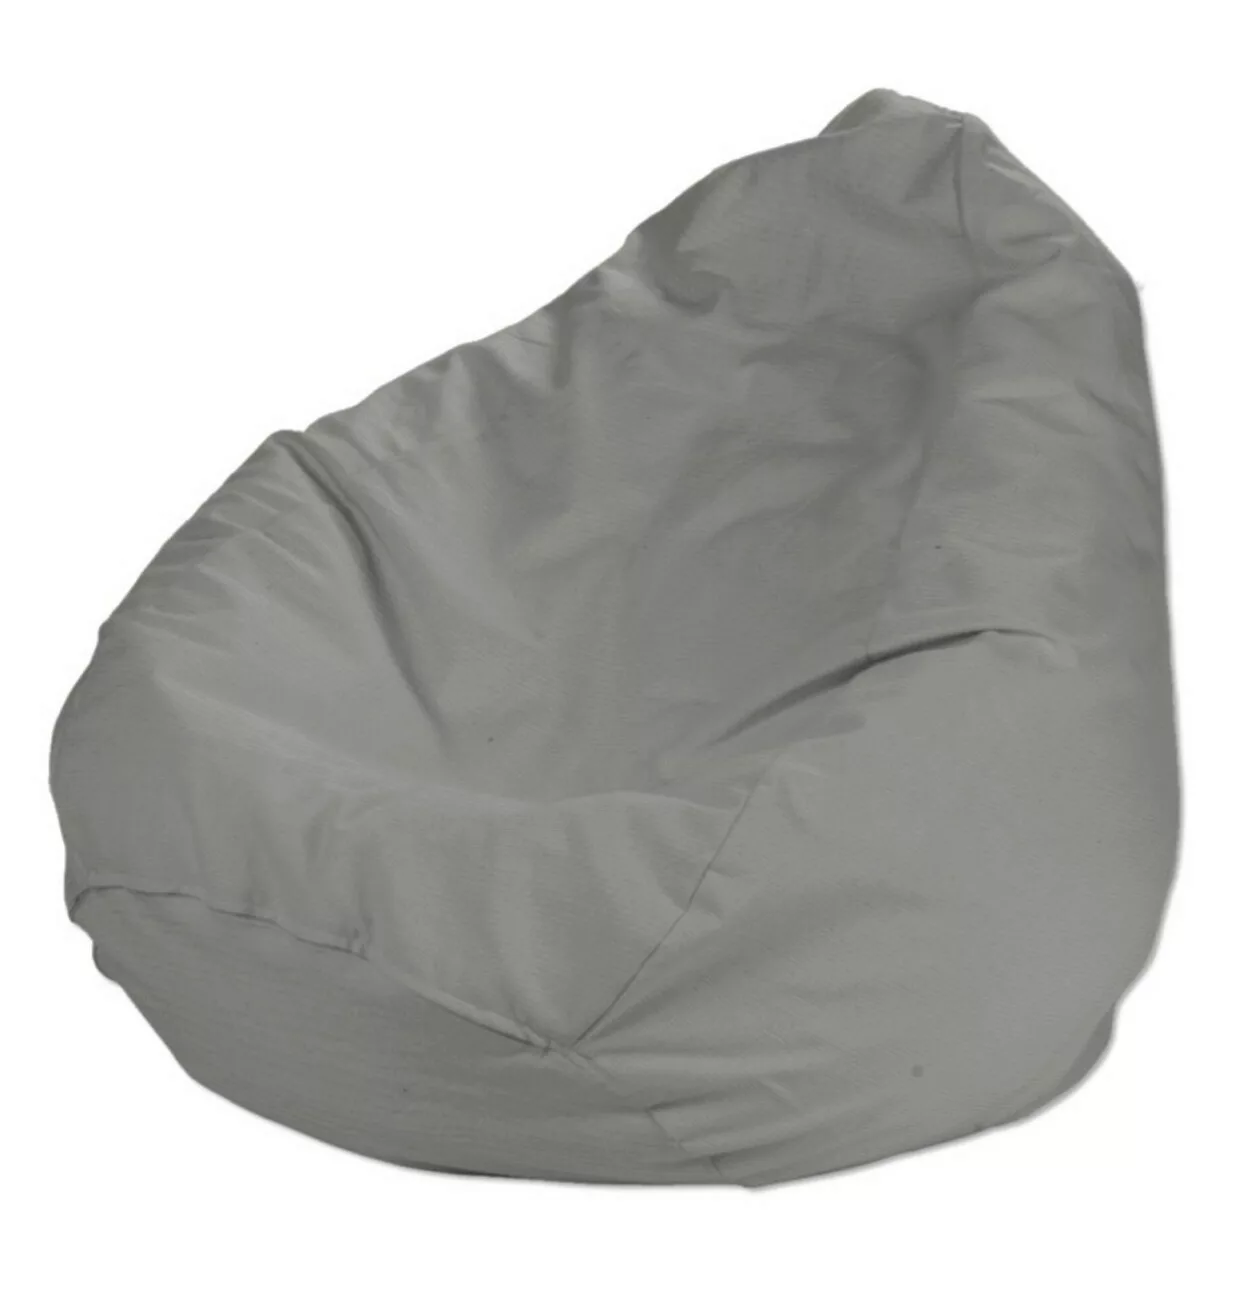 Bezug für Sitzsack, grau, Bezug für Sitzsack Ø60 x 105 cm, Loneta (133-24) günstig online kaufen